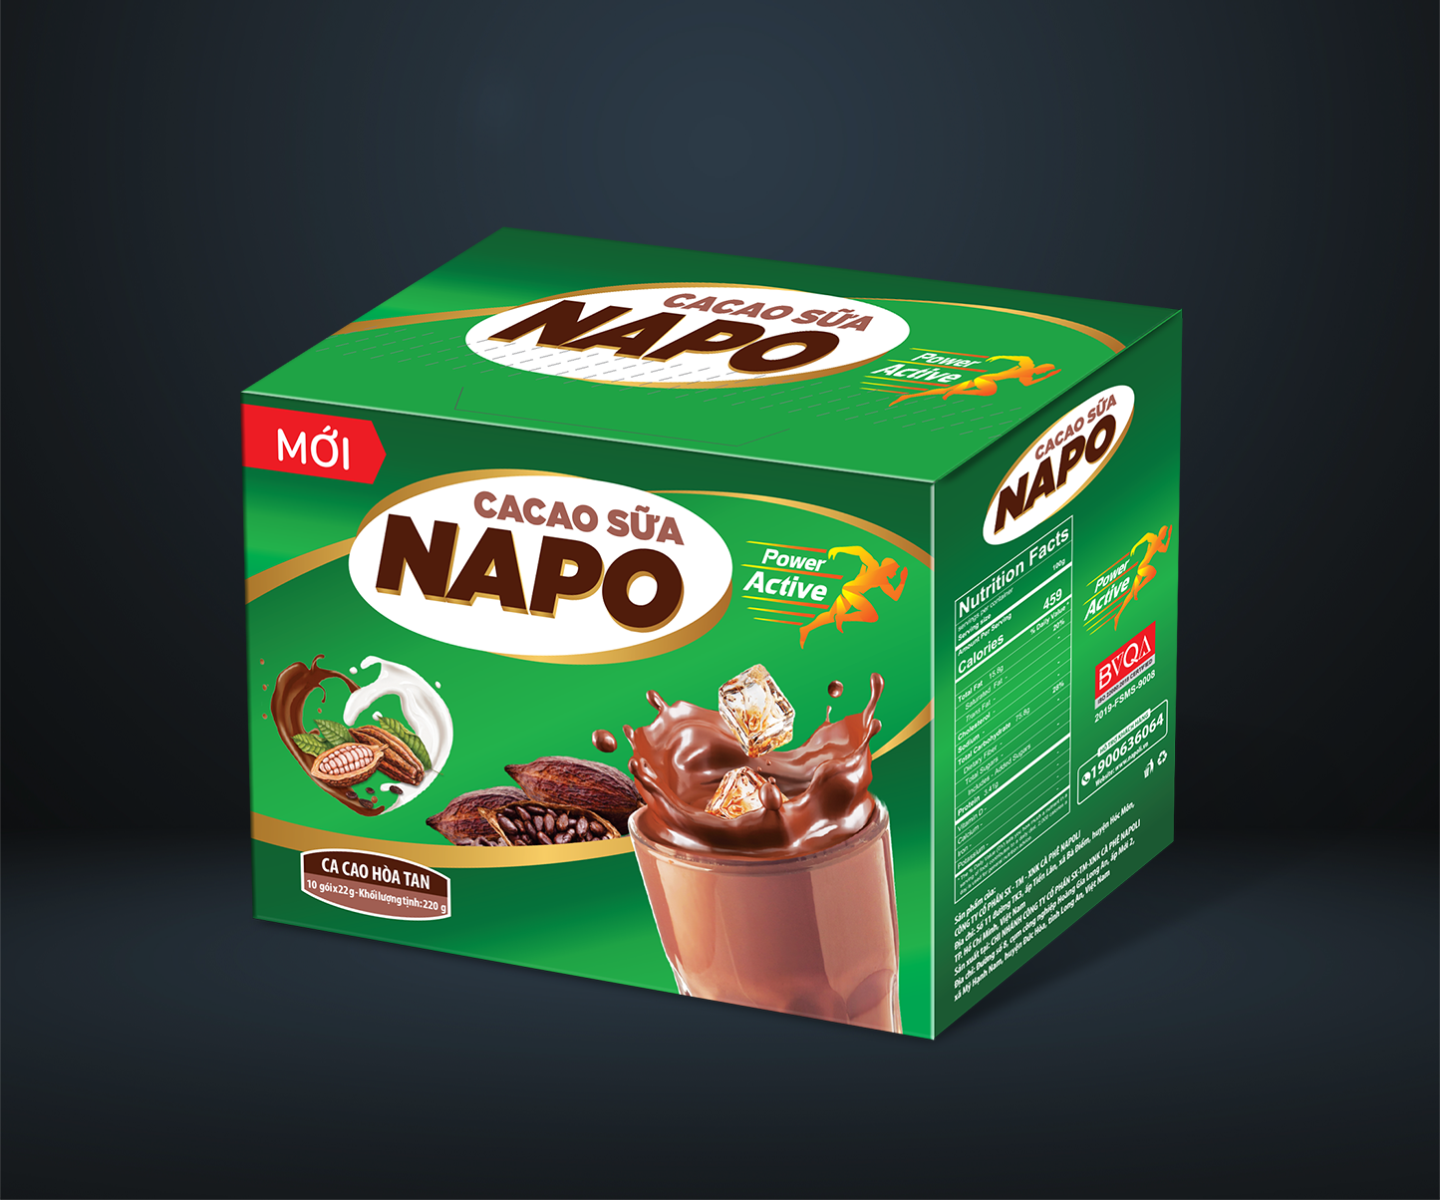 Napoli-San-pham-ca-cao-sua-napo-cocoa-with-milk-